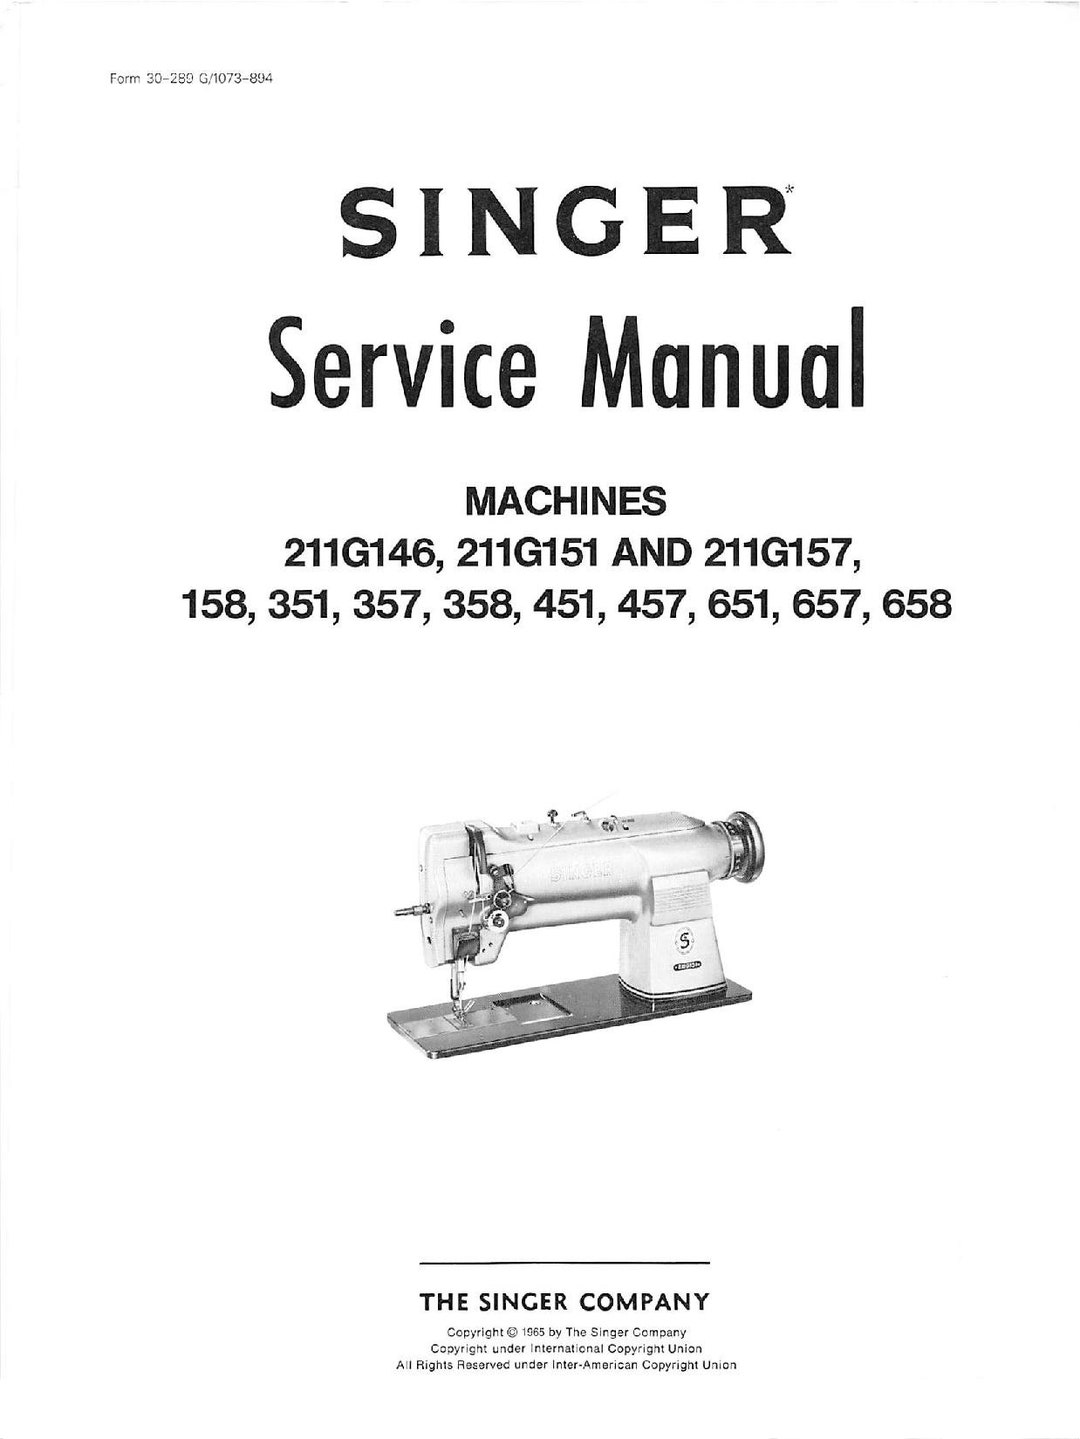 Singer Machine à Coudre M3405 Blanc